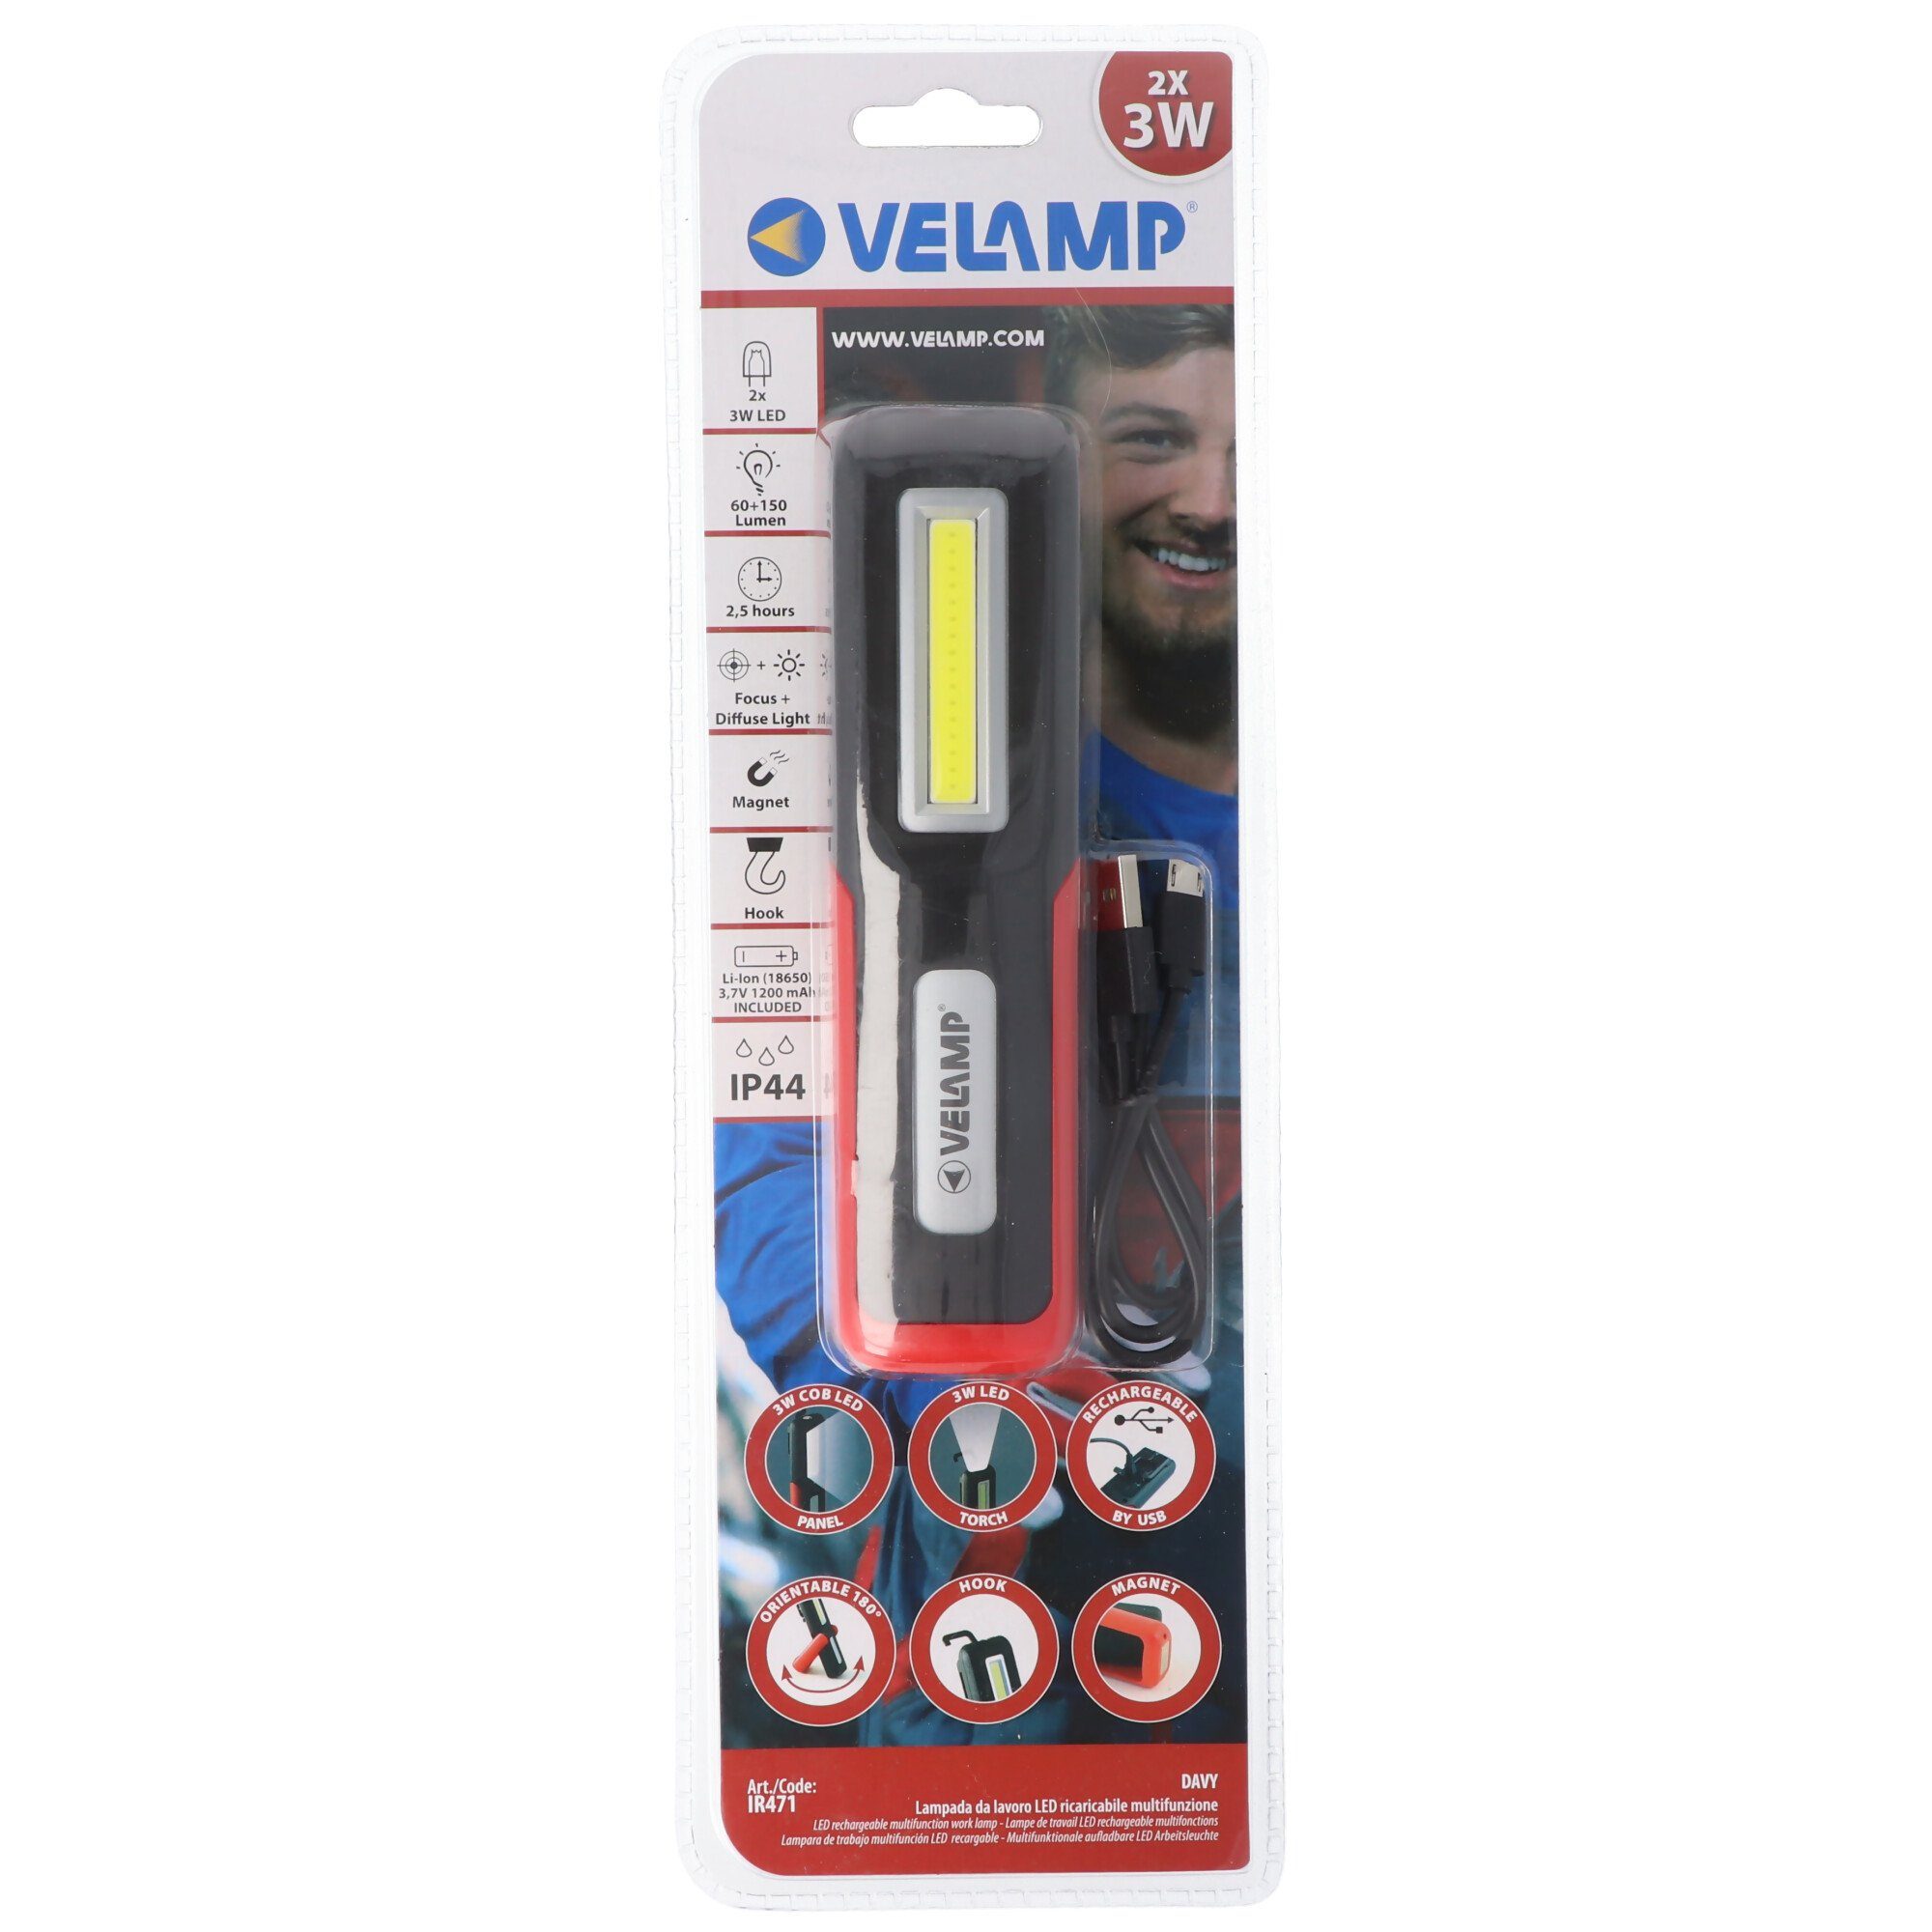 Velamp LED-Arbeitsleuchte, Multifunktionale Arbeitsleuchte Ar wiederaufladbar USB, per 2in1